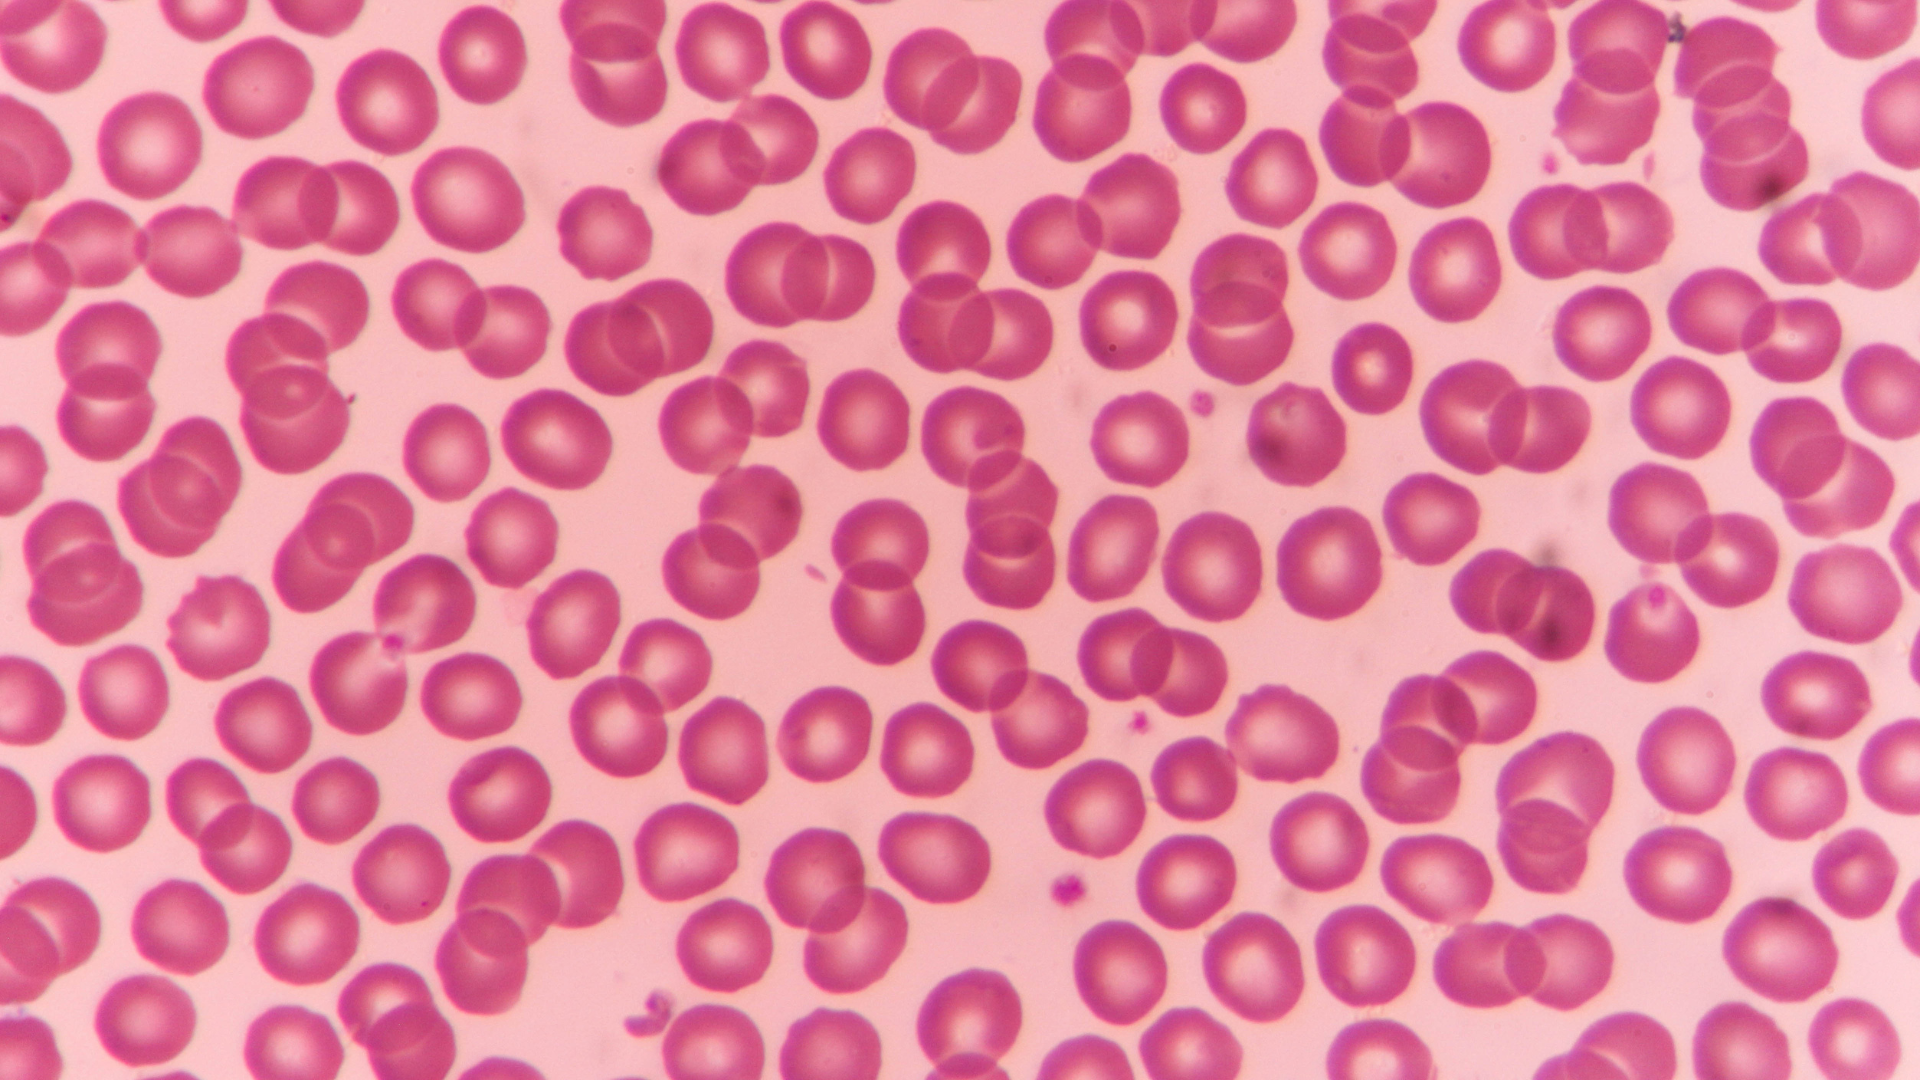 Человеческий организм под микроскопом (17 фото) | Клетки крови, Микроскопы, Стволовые клетки